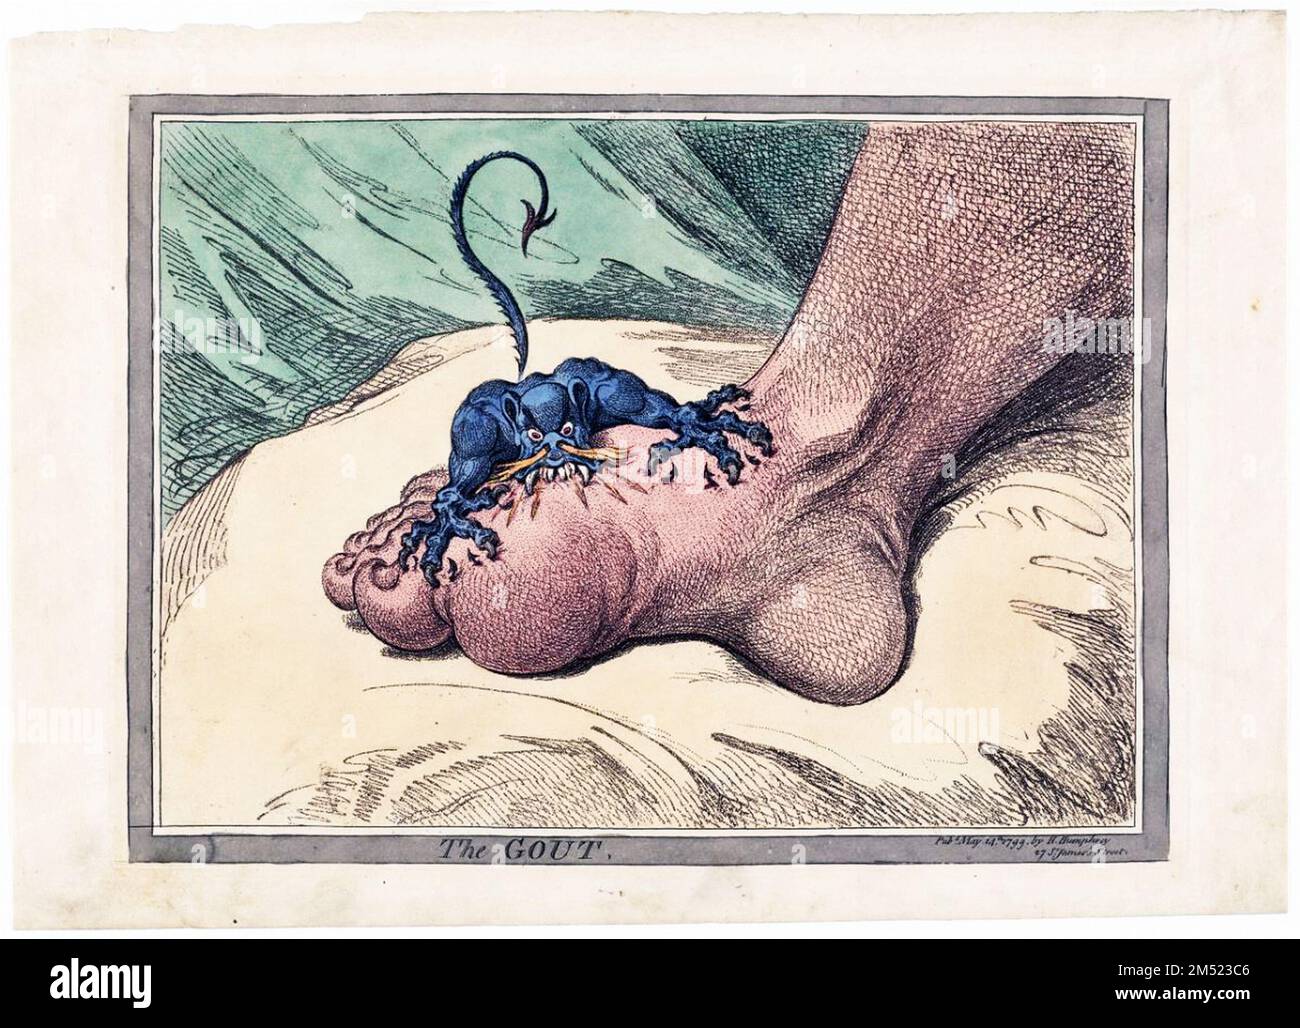 L'artiste James Gillray illustre avec force la douleur et la souffrance causées par la goutte, une maladie courante de son temps. Publié 1799 Banque D'Images